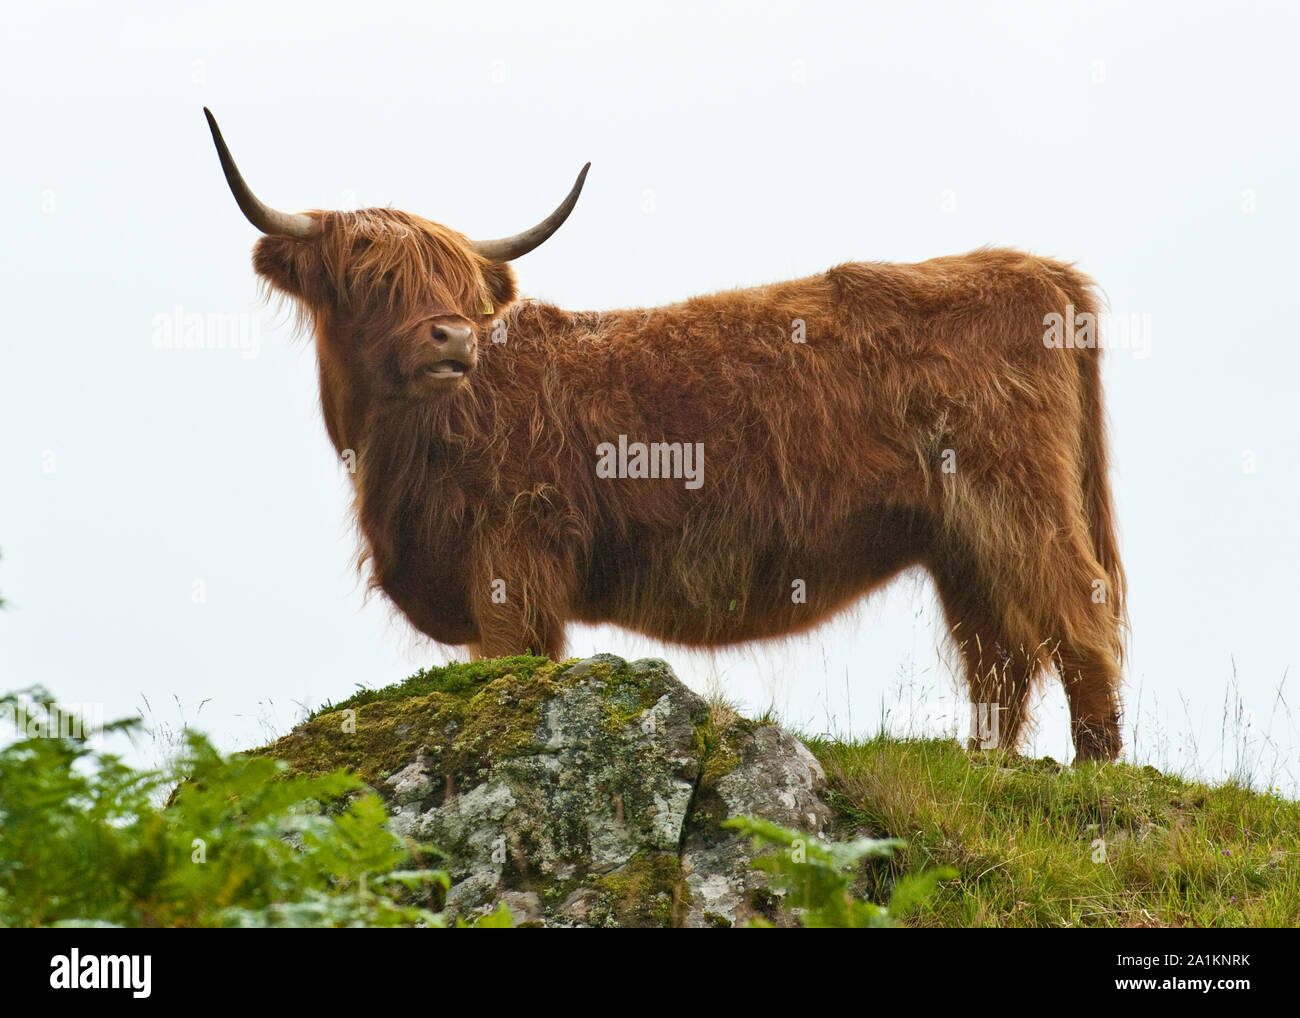 Highland Cow. Isle of Mull, Scotland Stock Photo